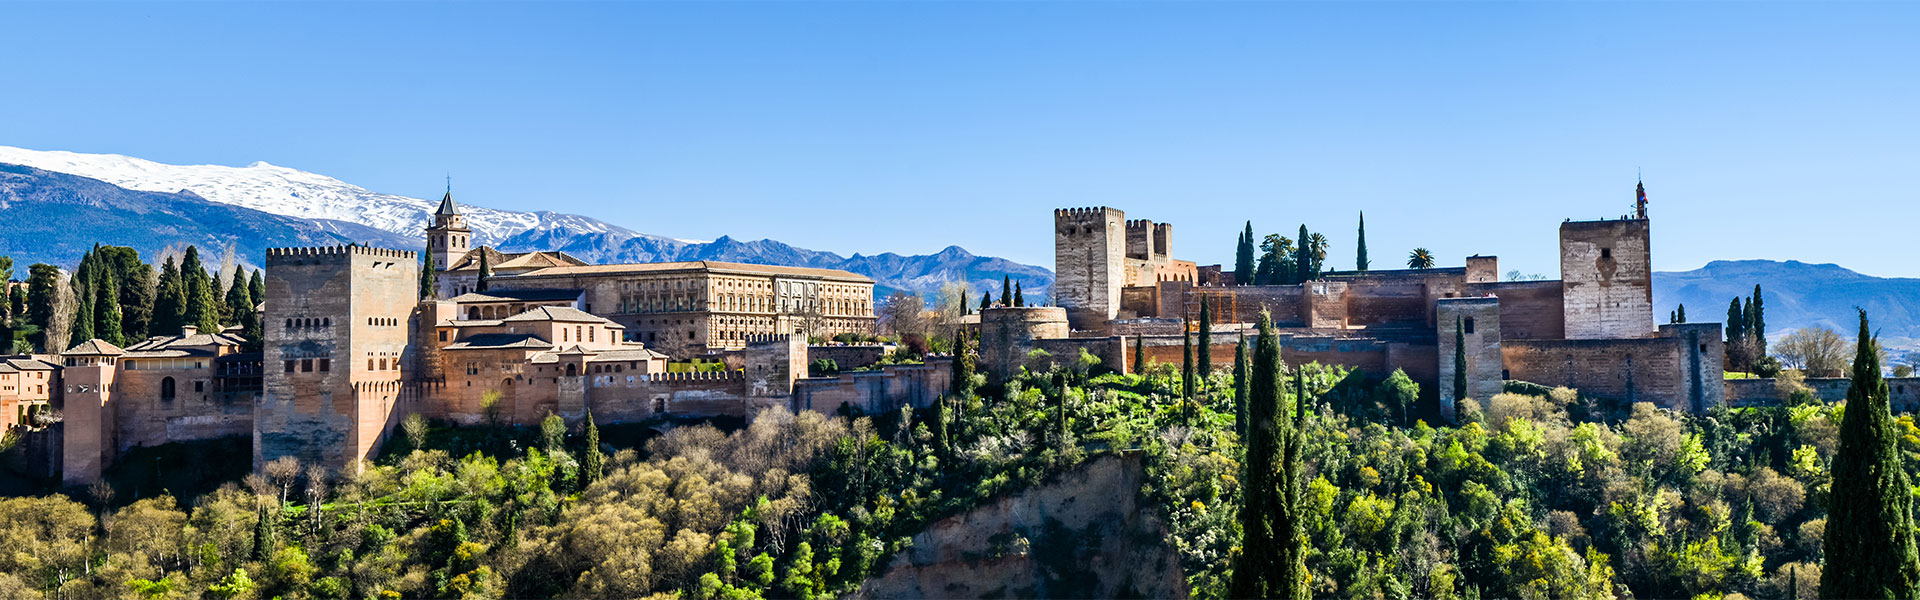 Utasbiztosítás buszos és vonattal történő utazásokhoz, az alhambrai kastély látképe, a spanyolországi Granadában